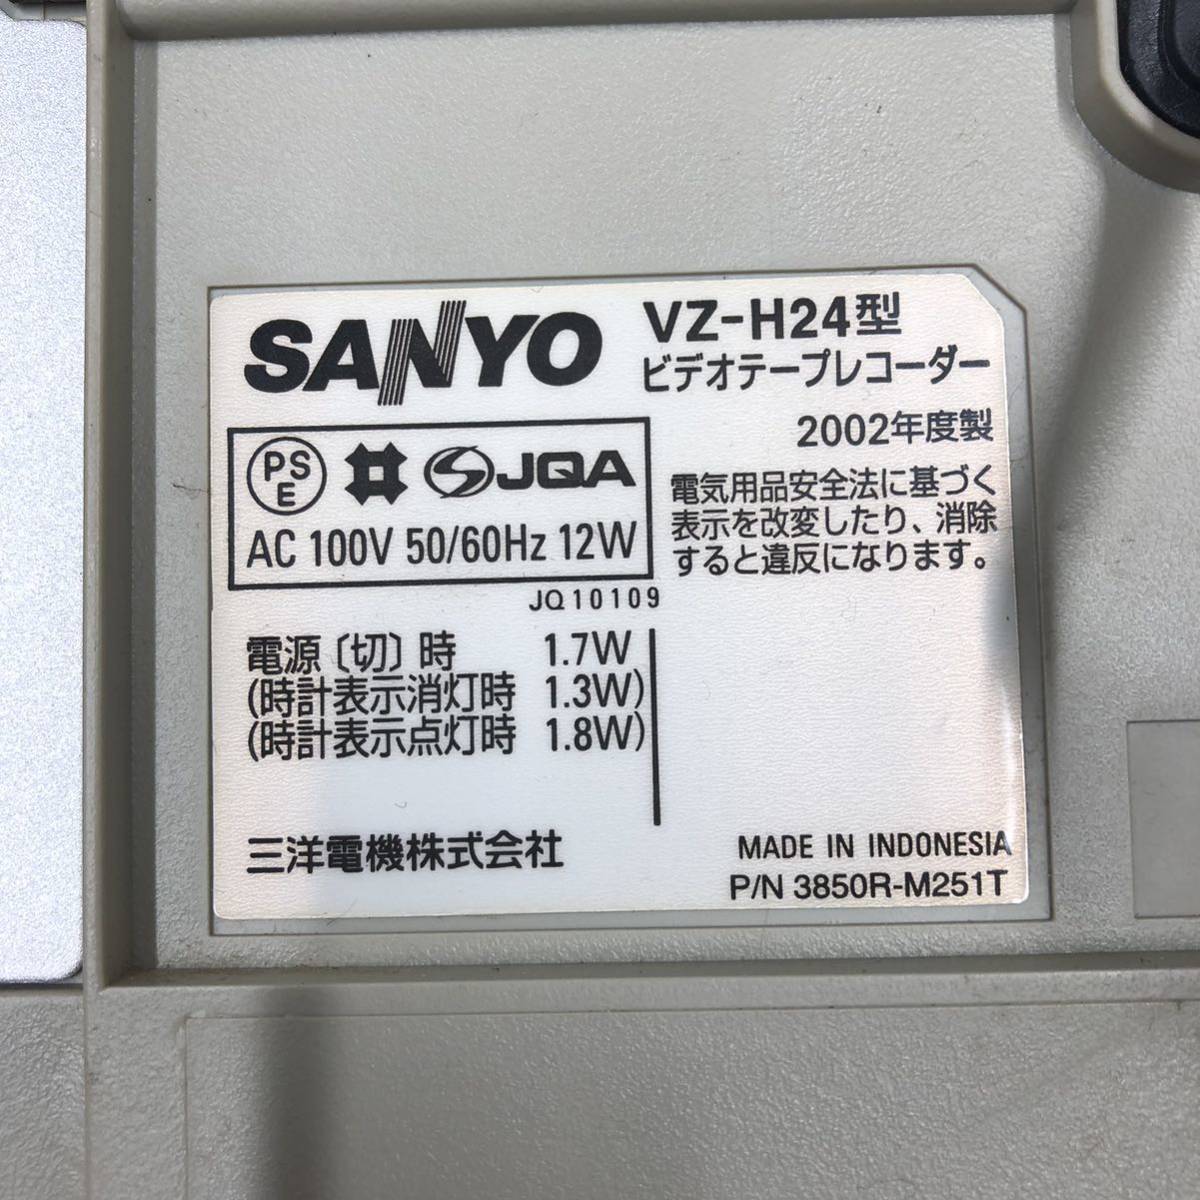 * 1 иен старт!! источник питания OK!! * SANYO VHS видеолента магнитофон VZ-H24 видеодека дистанционный пульт нет Sanyo работоспособность не проверялась *